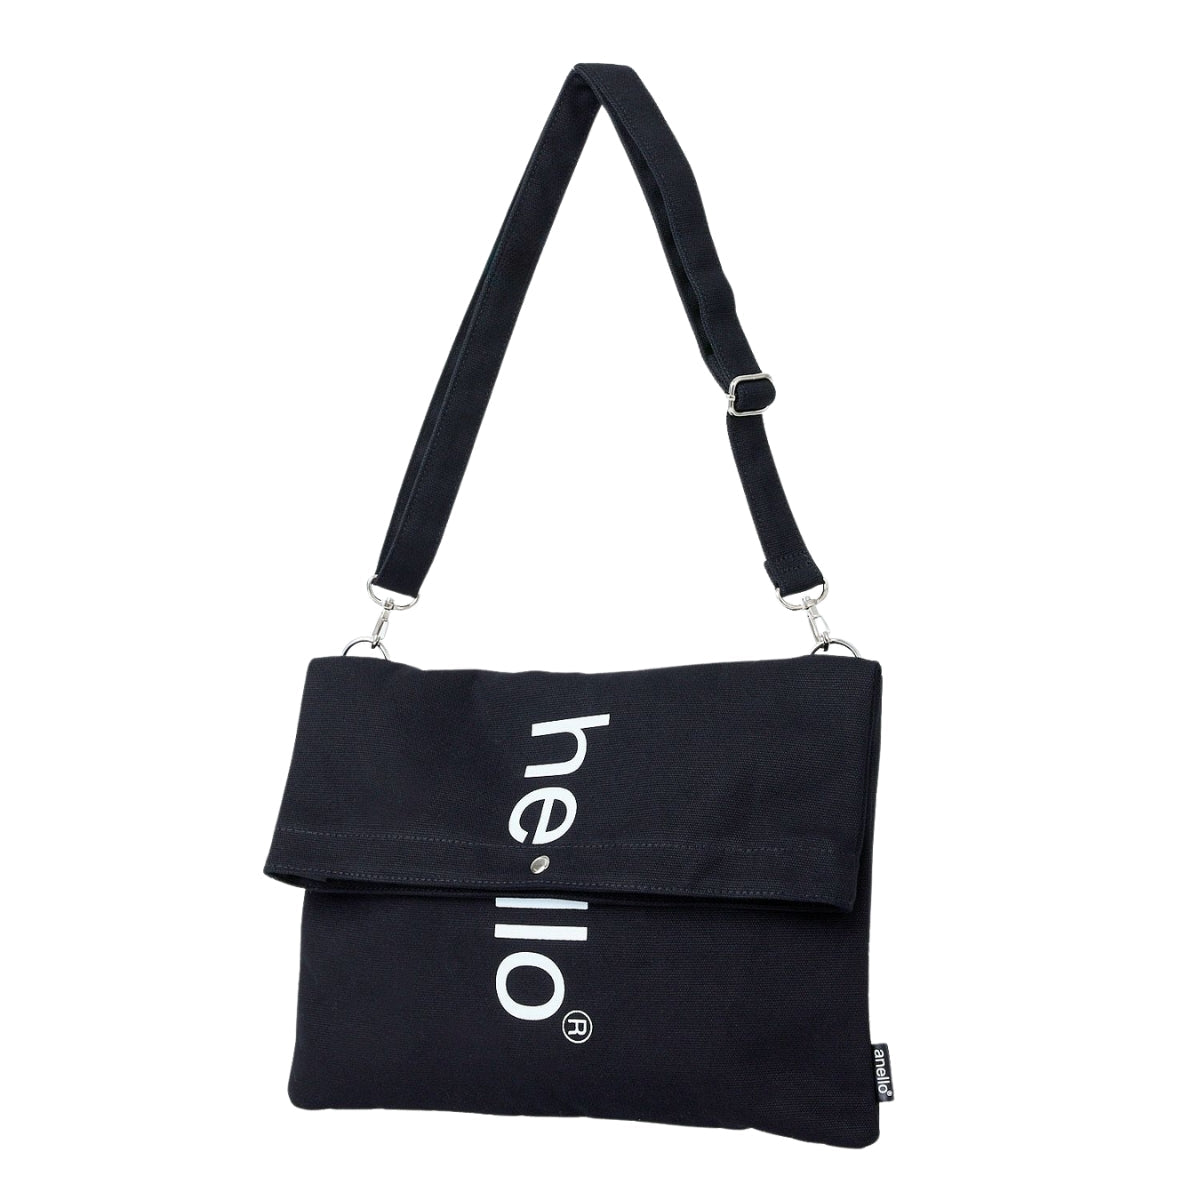 Anello Hello 3 Way Shoulder Bag in Black